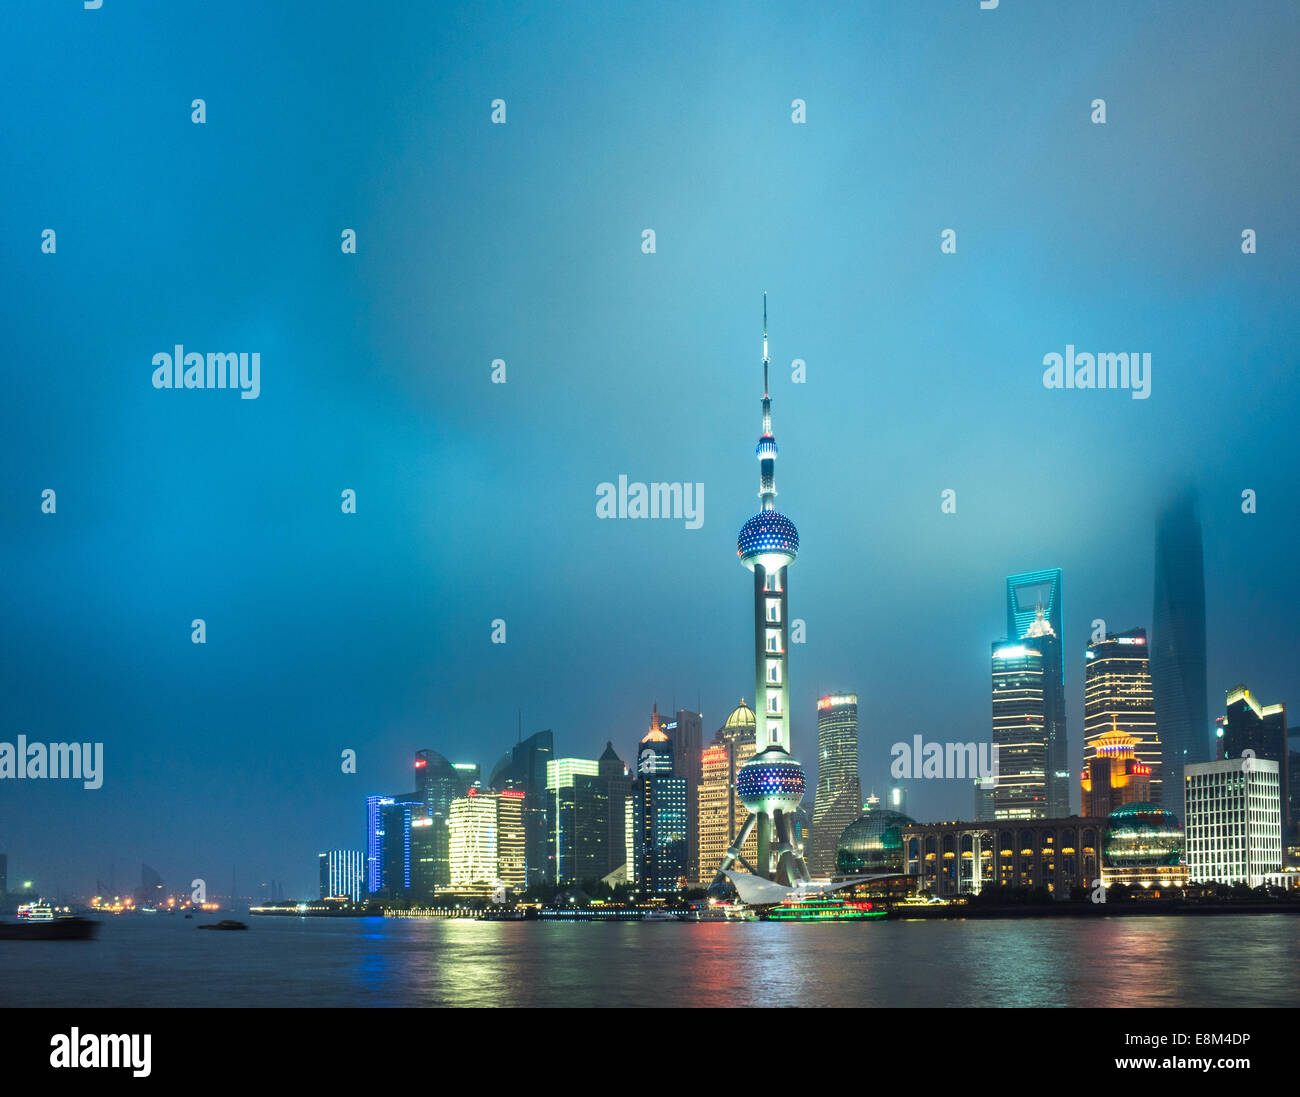 Skyline of shanghai the bund at night, landmark of China. Stock Photo